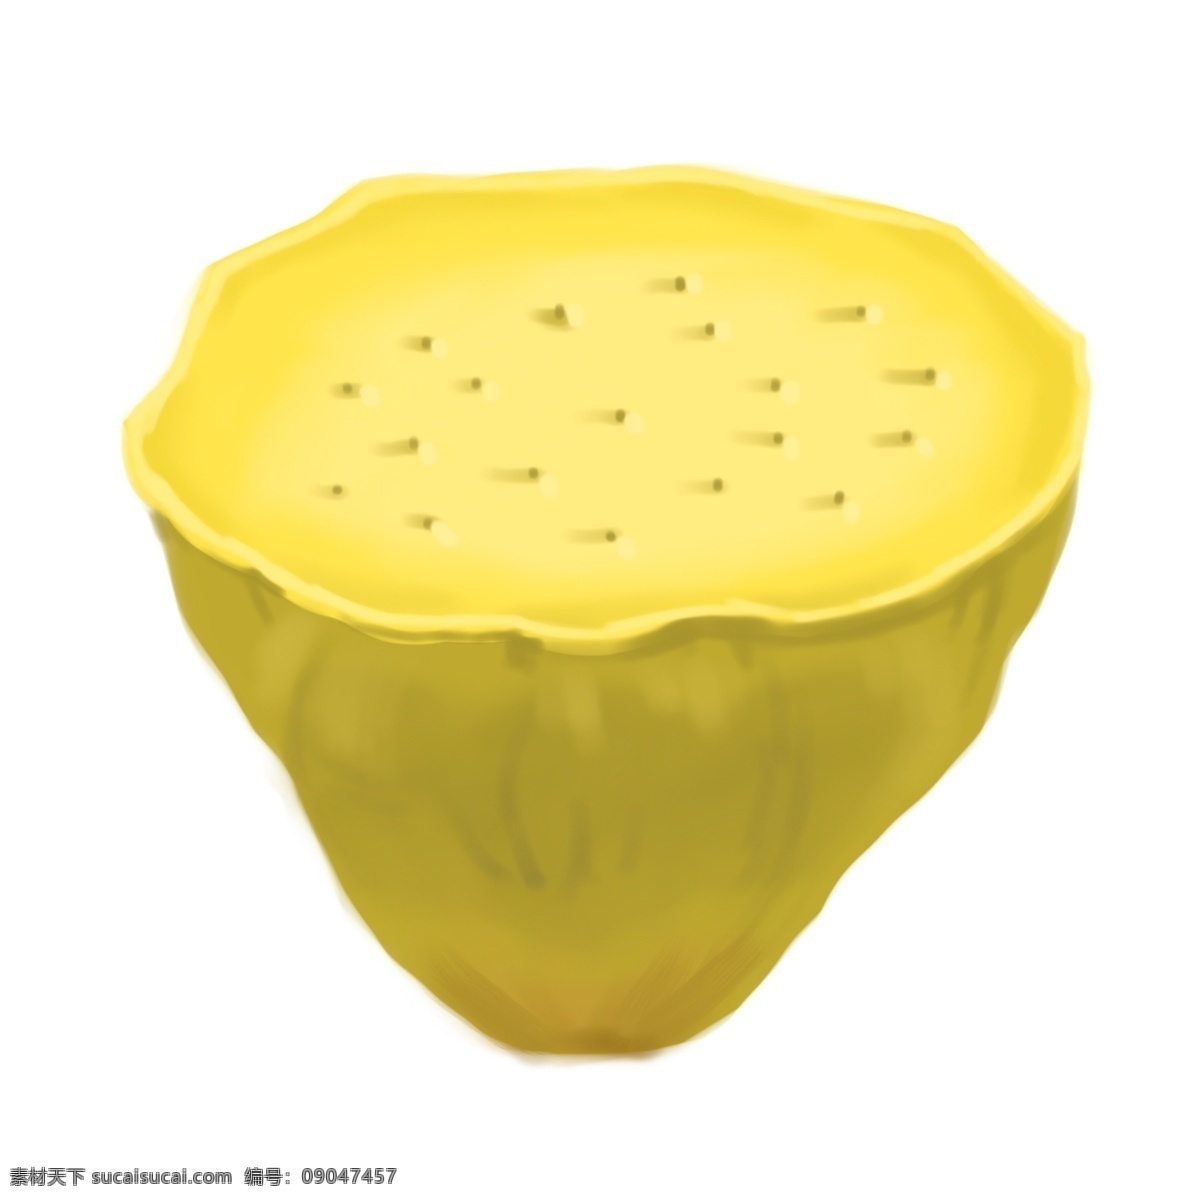 黄色 成熟 莲藕 插图 黄色莲藕植物 成熟的莲藕 黄色插图 精美的设计 平面设计 卡通插画 荷花莲蓬